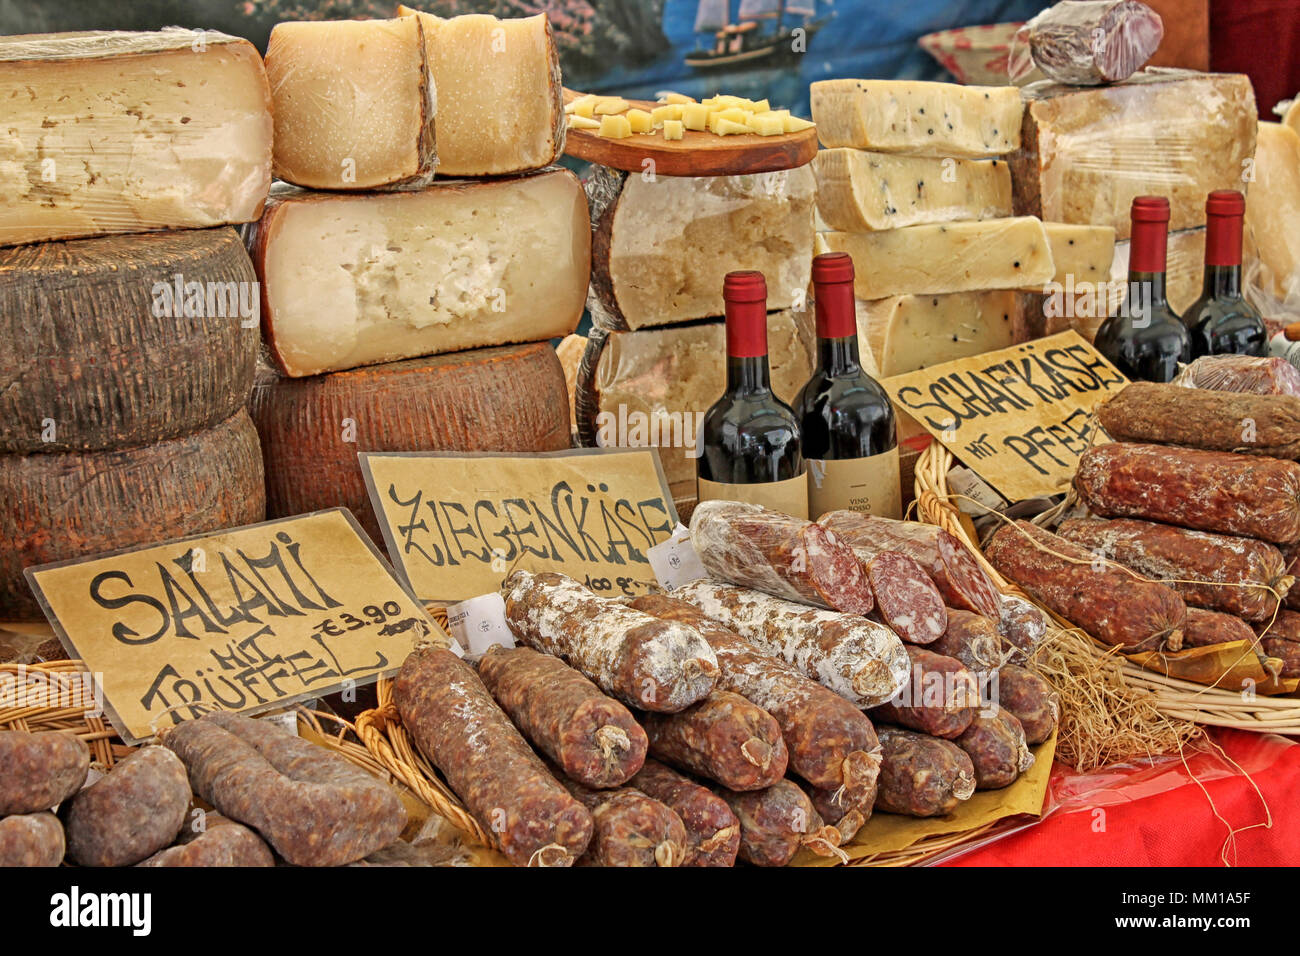 Mercado de alimentos tradicionales. Ratisbona, Baviera, Alemania, 2018. Foto de stock